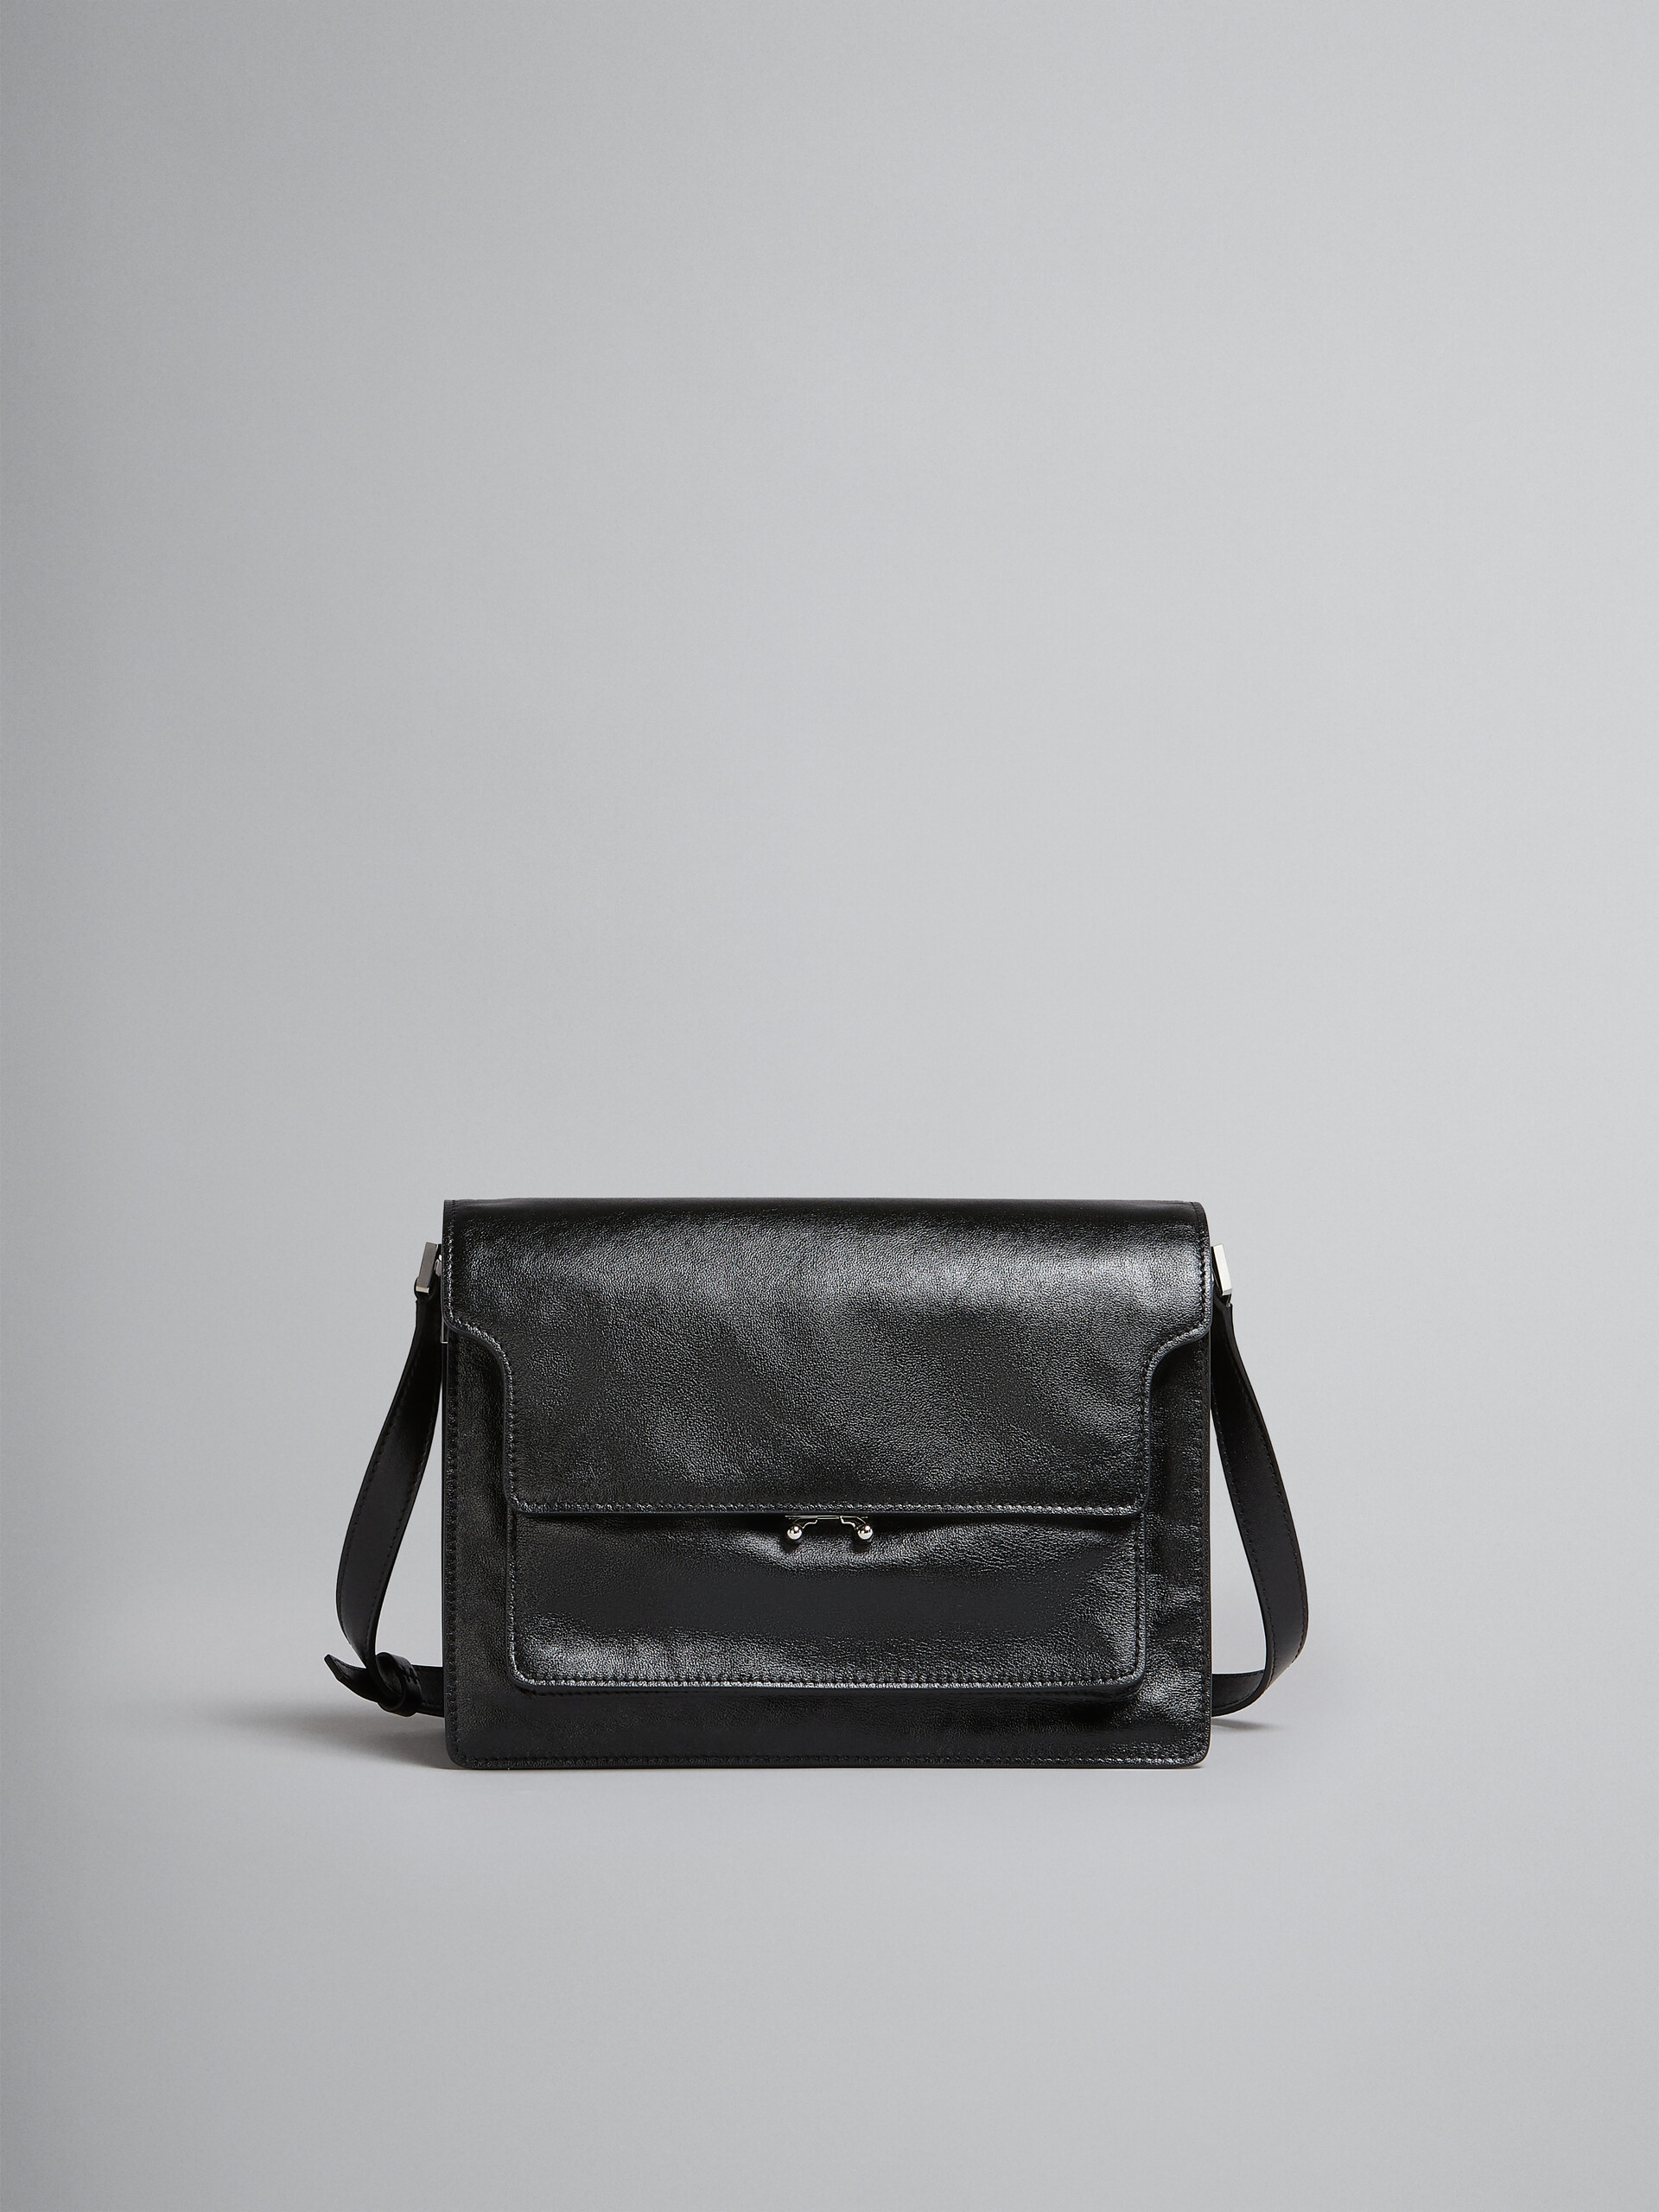 Trunk Soft Large Bag in black leather - Shoulder Bags - Image 1